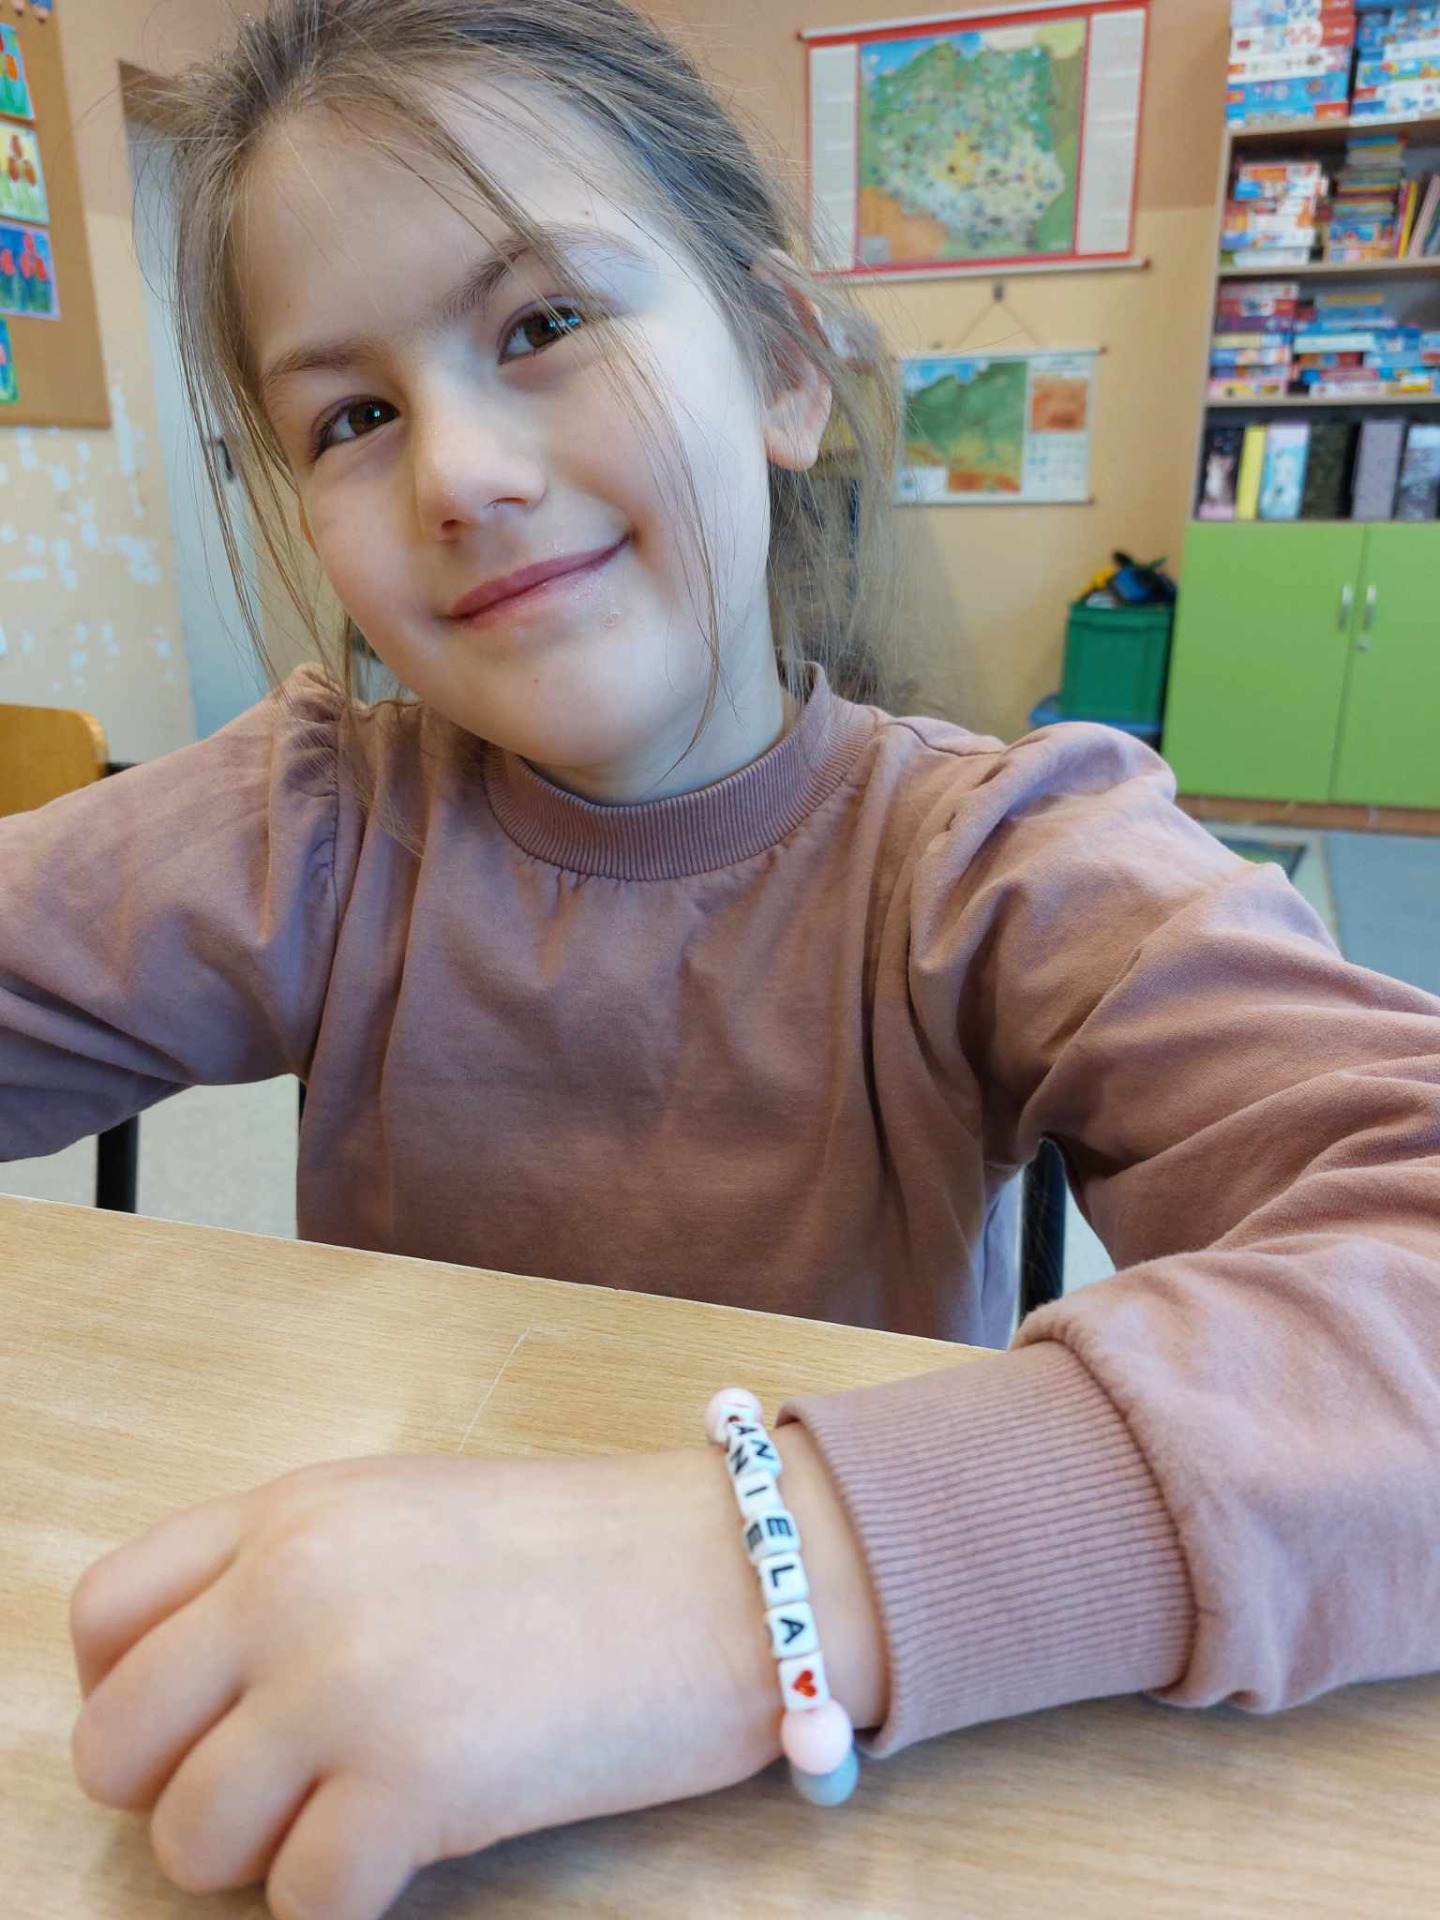 Dziewczynka prezentuje bransoletkę ze swoim imieniem